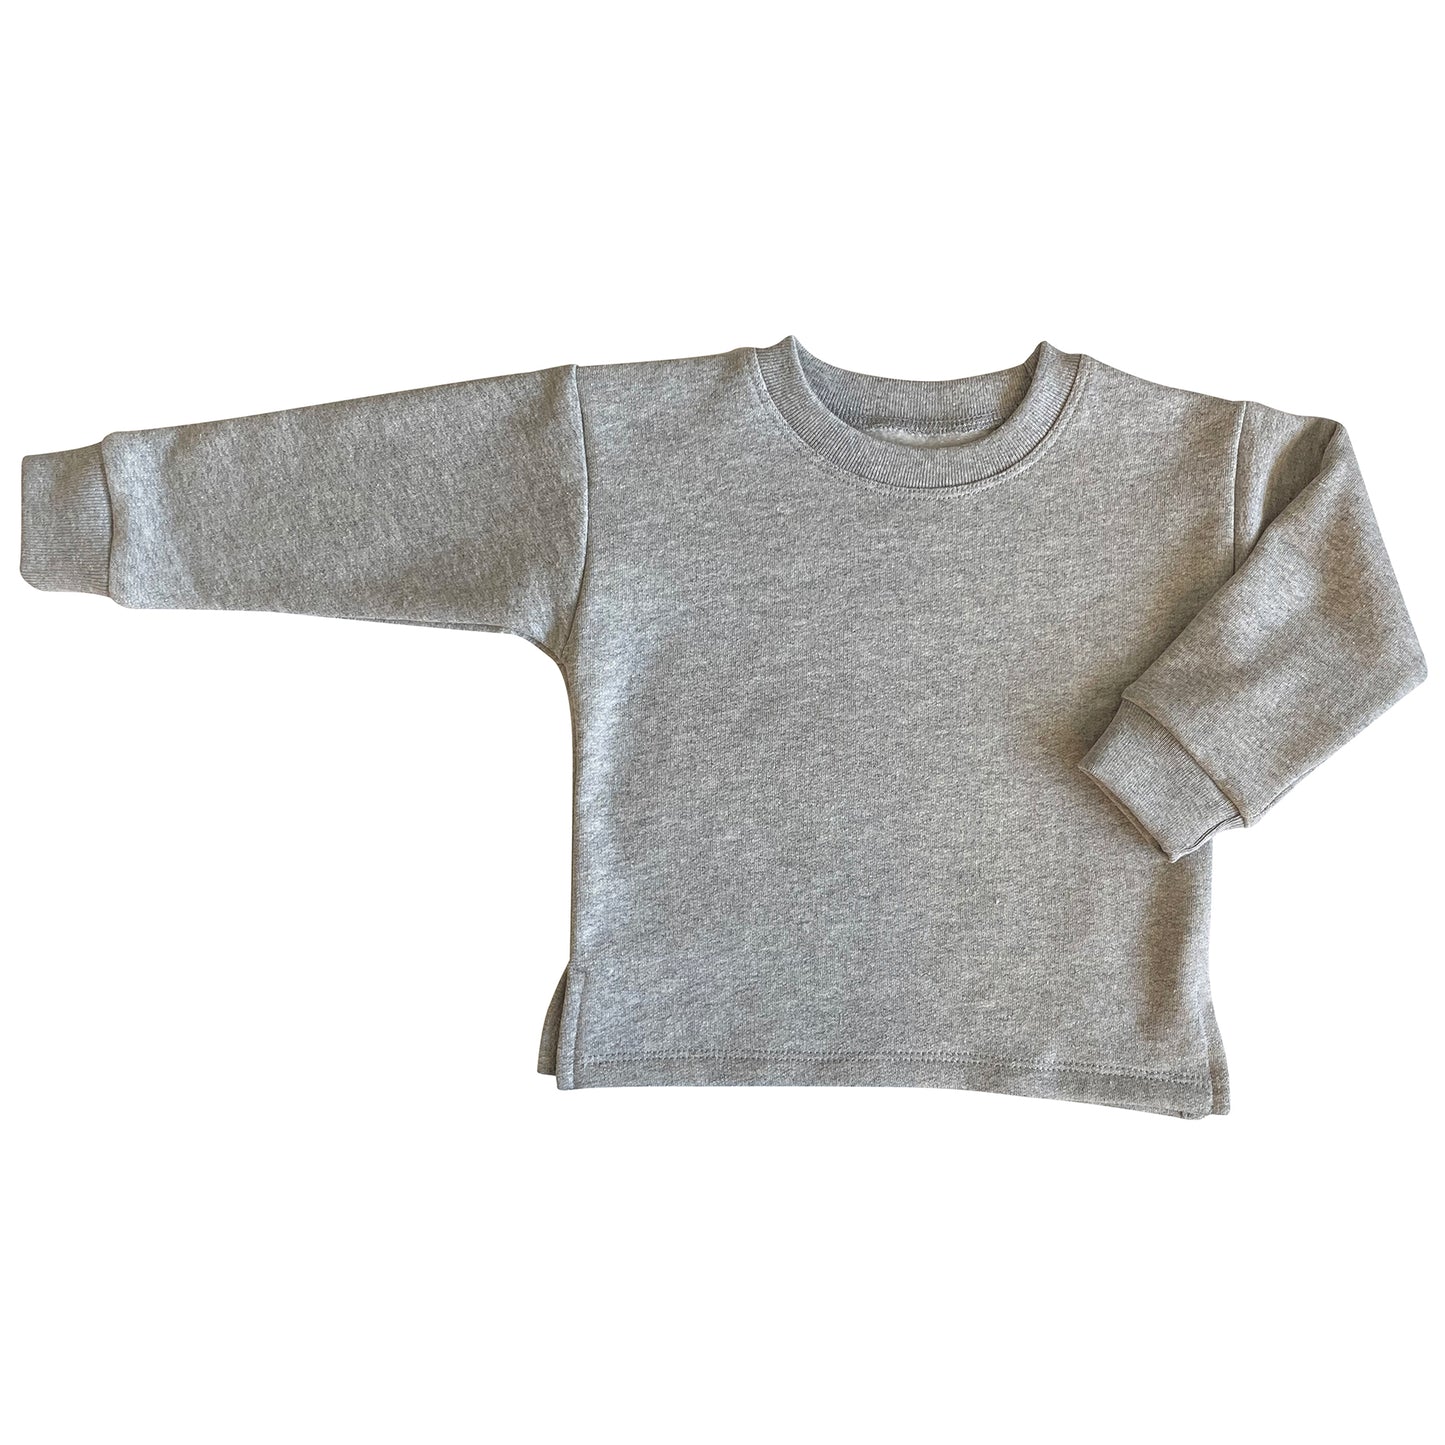 Unisex Fleece Sweatshirt - Heather Grey